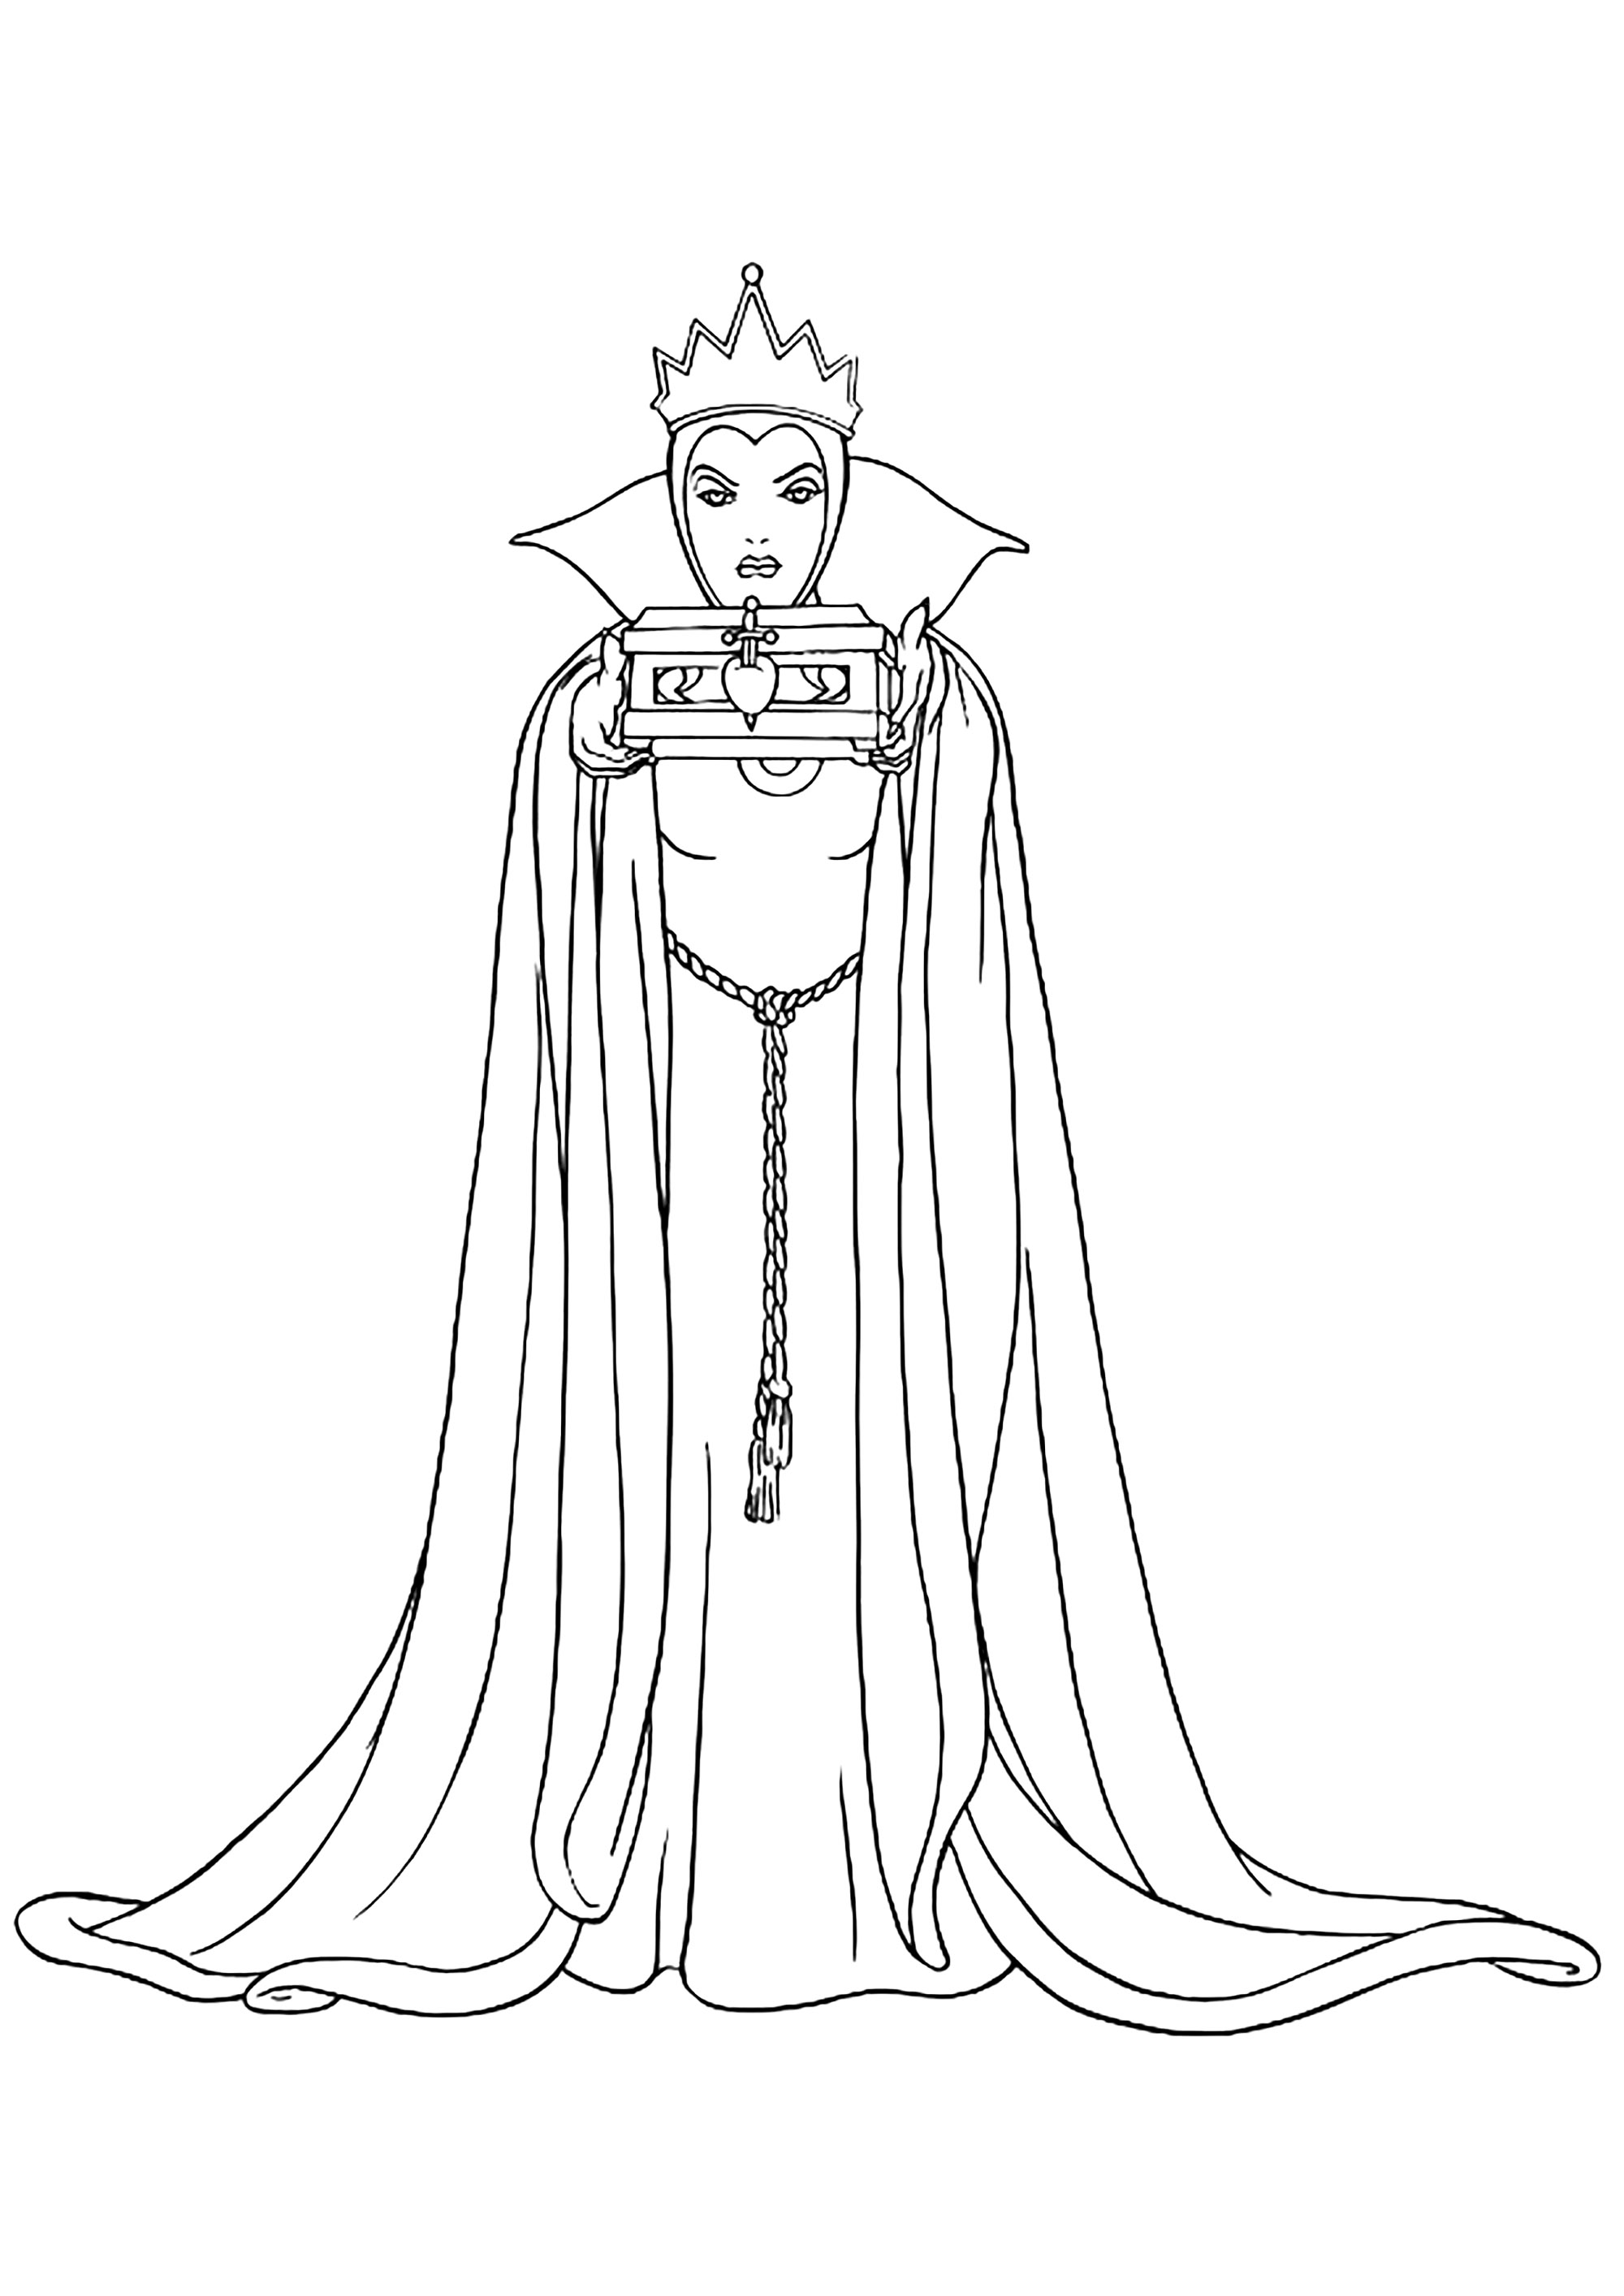 A Rainha Má de Branca de Neve com o cofre que deveria conter o coração de Branca de Neve